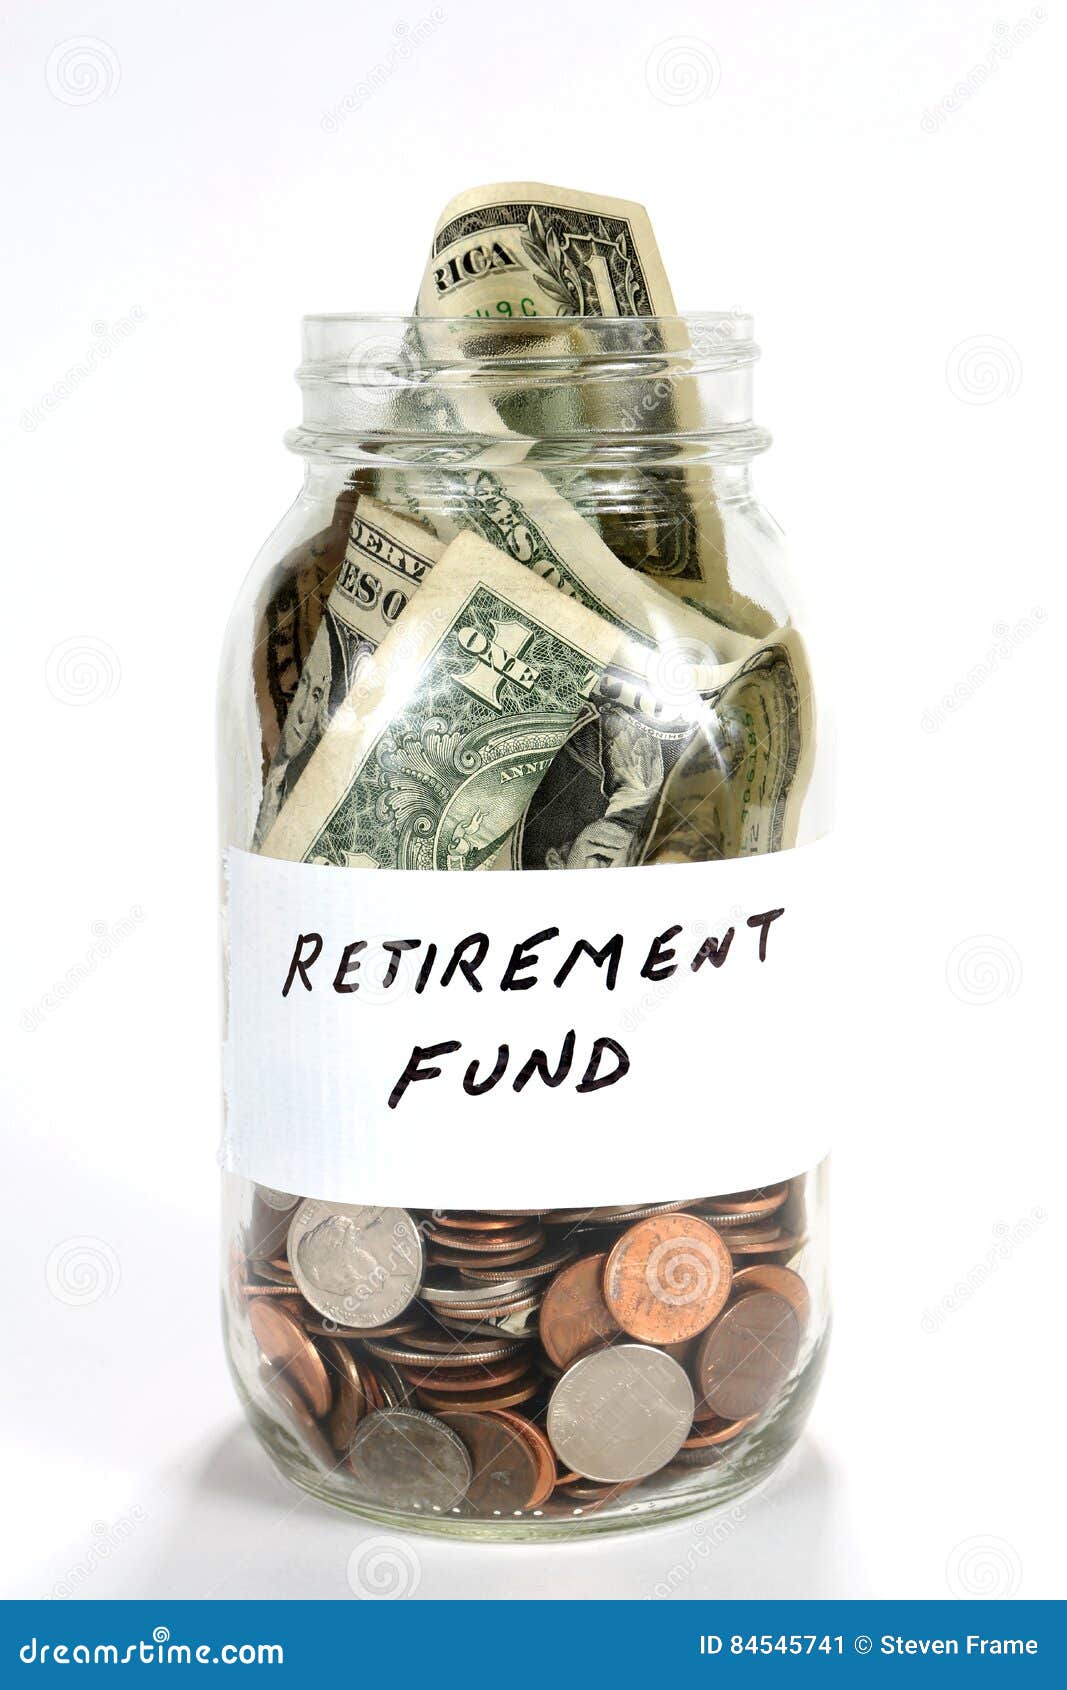 pension cash fund